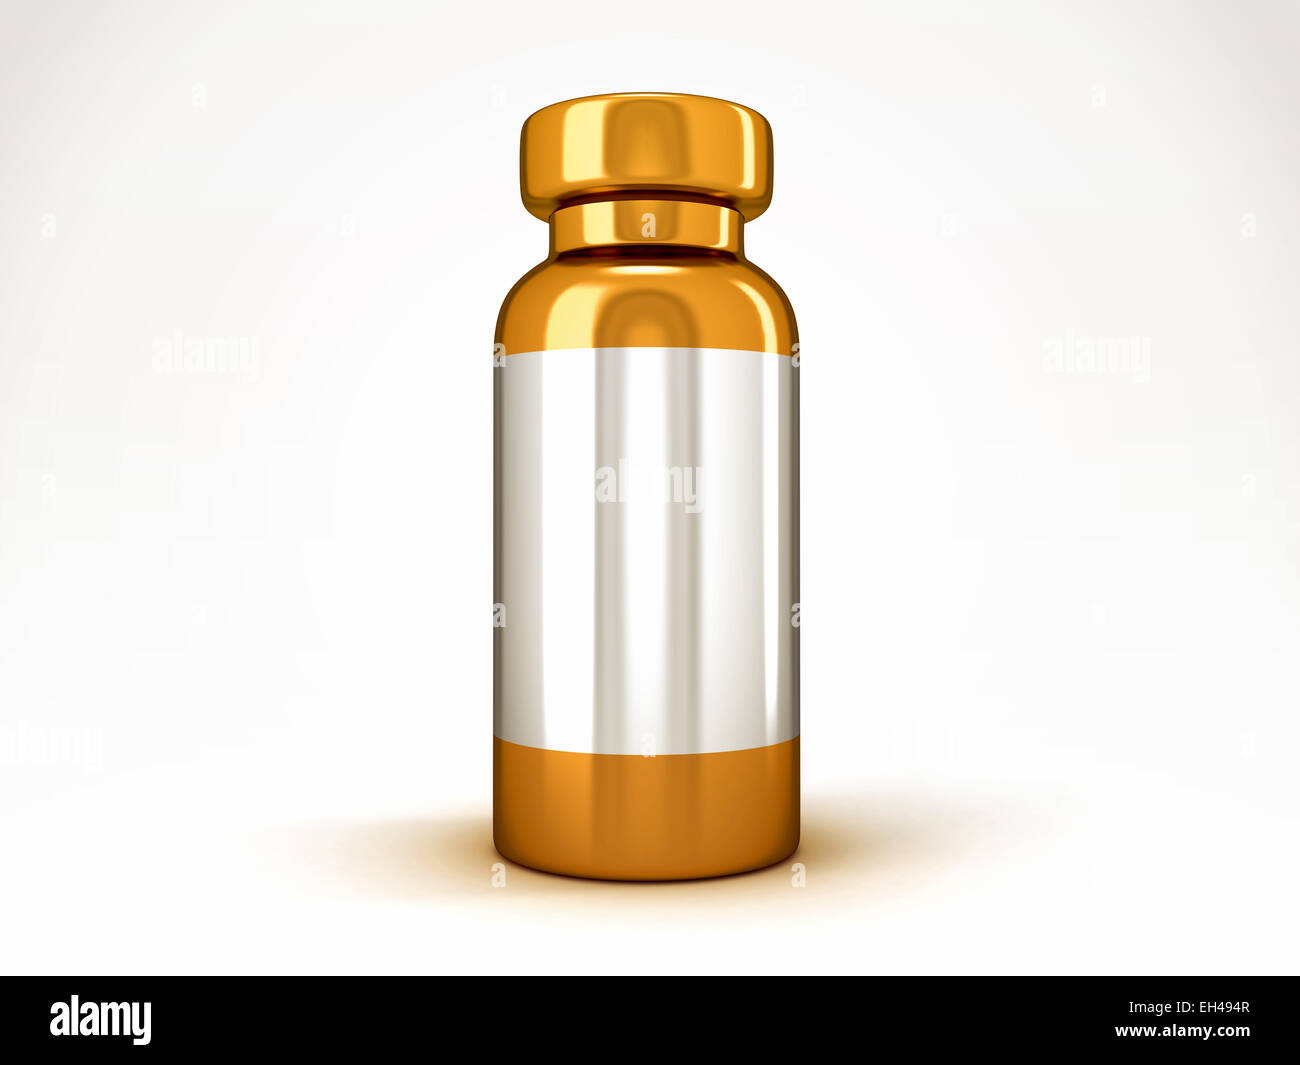 Medicina: Golden medical ampolla sobre fondo blanco. Foto de stock